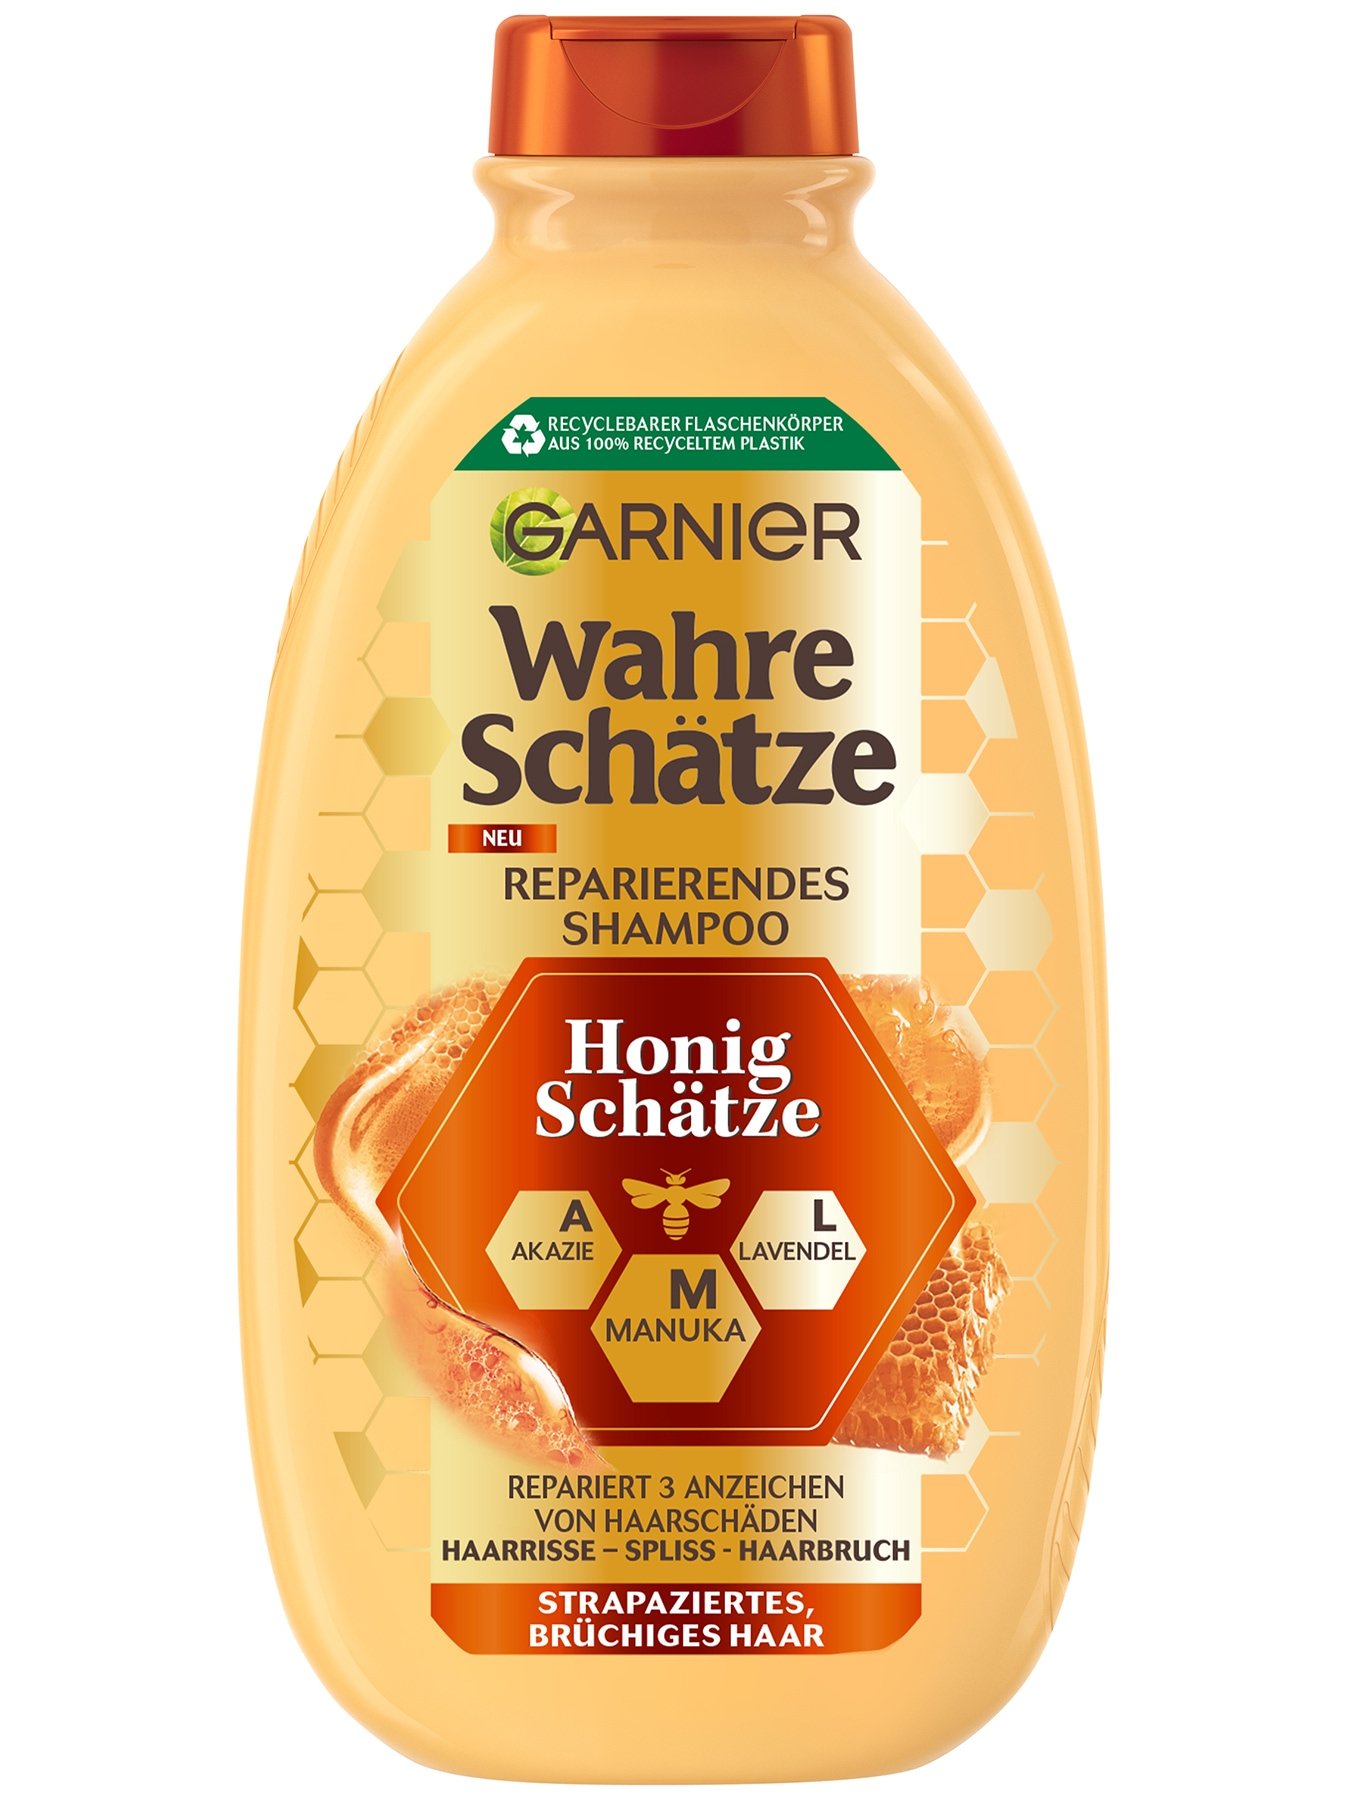 Wahre Schätze Reparierendes Shampoo Honig Schätze 400ml - Produktabbildung